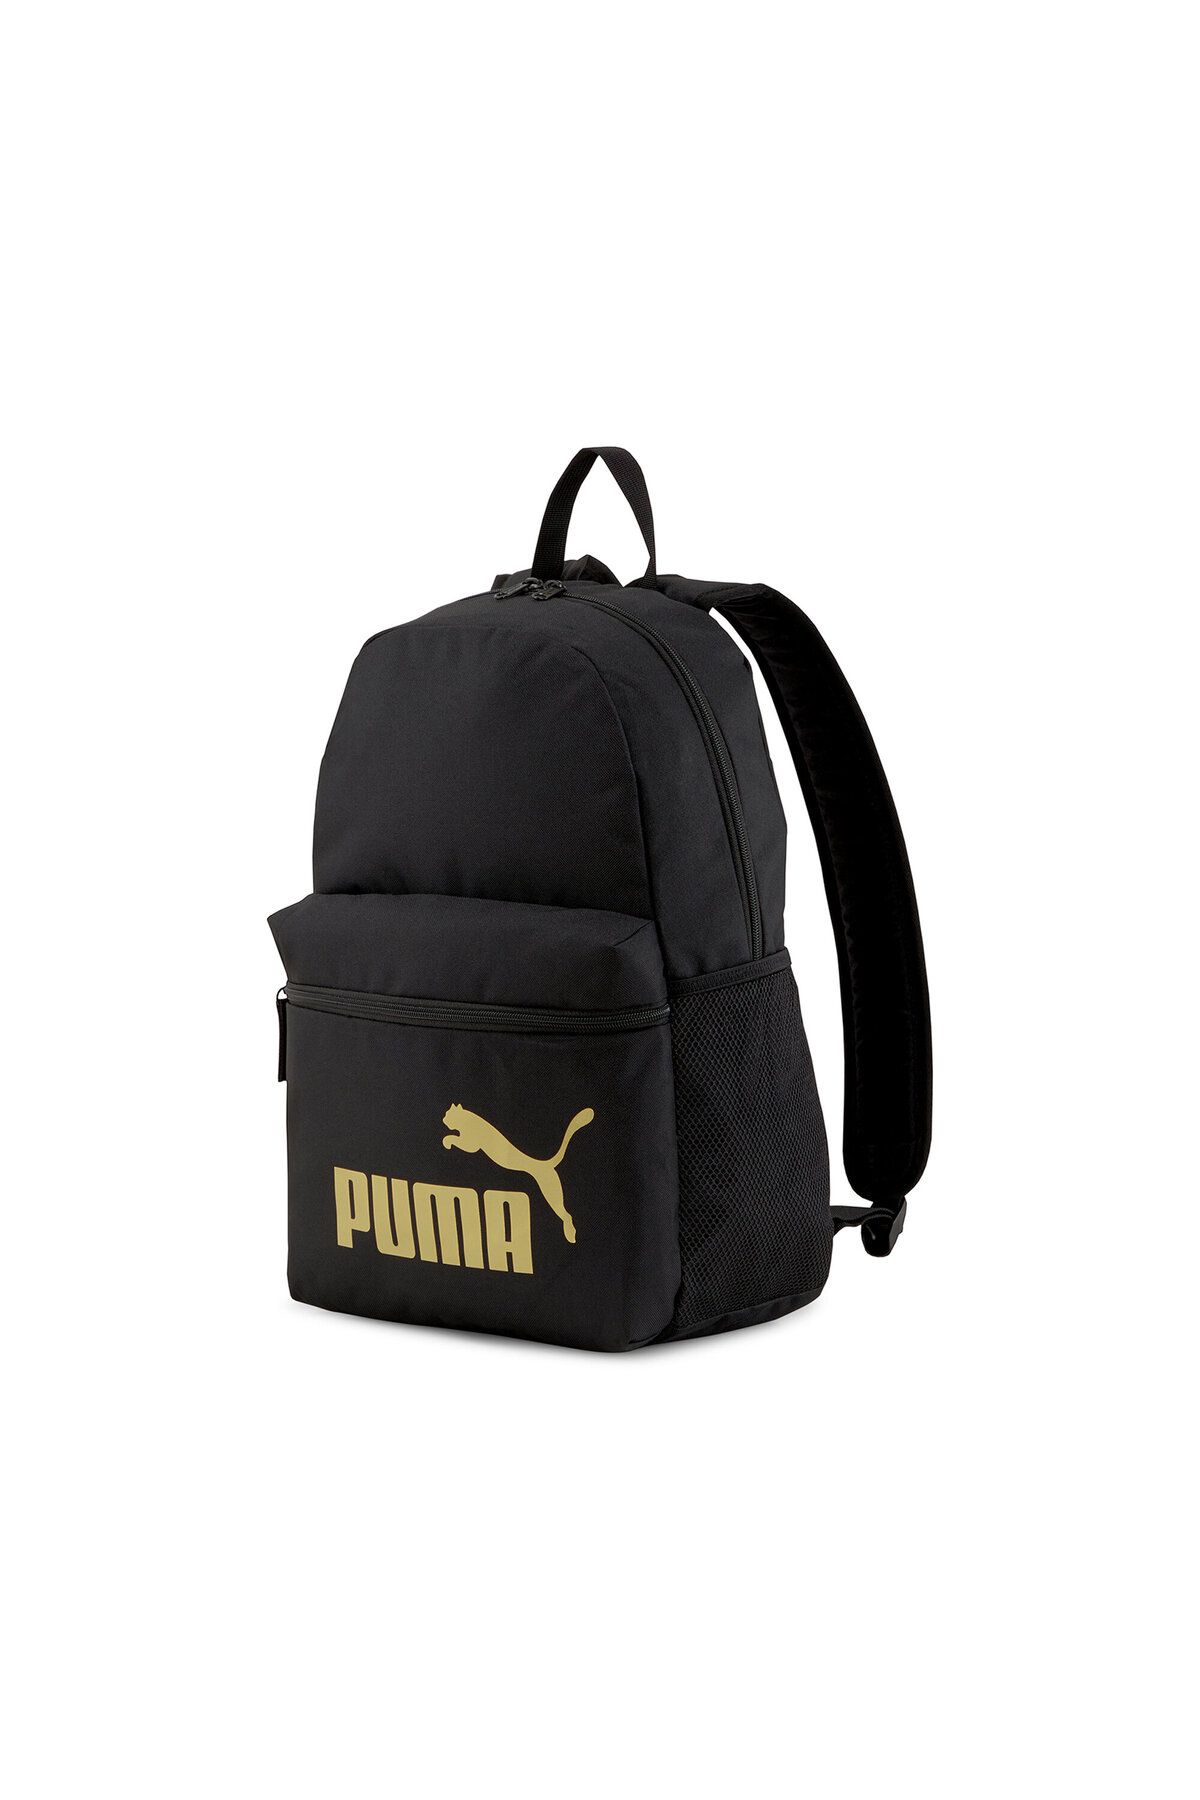 Puma Backpack Günlük Kullanıma Uygun Sırt ve Okul Çantası İlkokul Ortaokul Lise Çantası